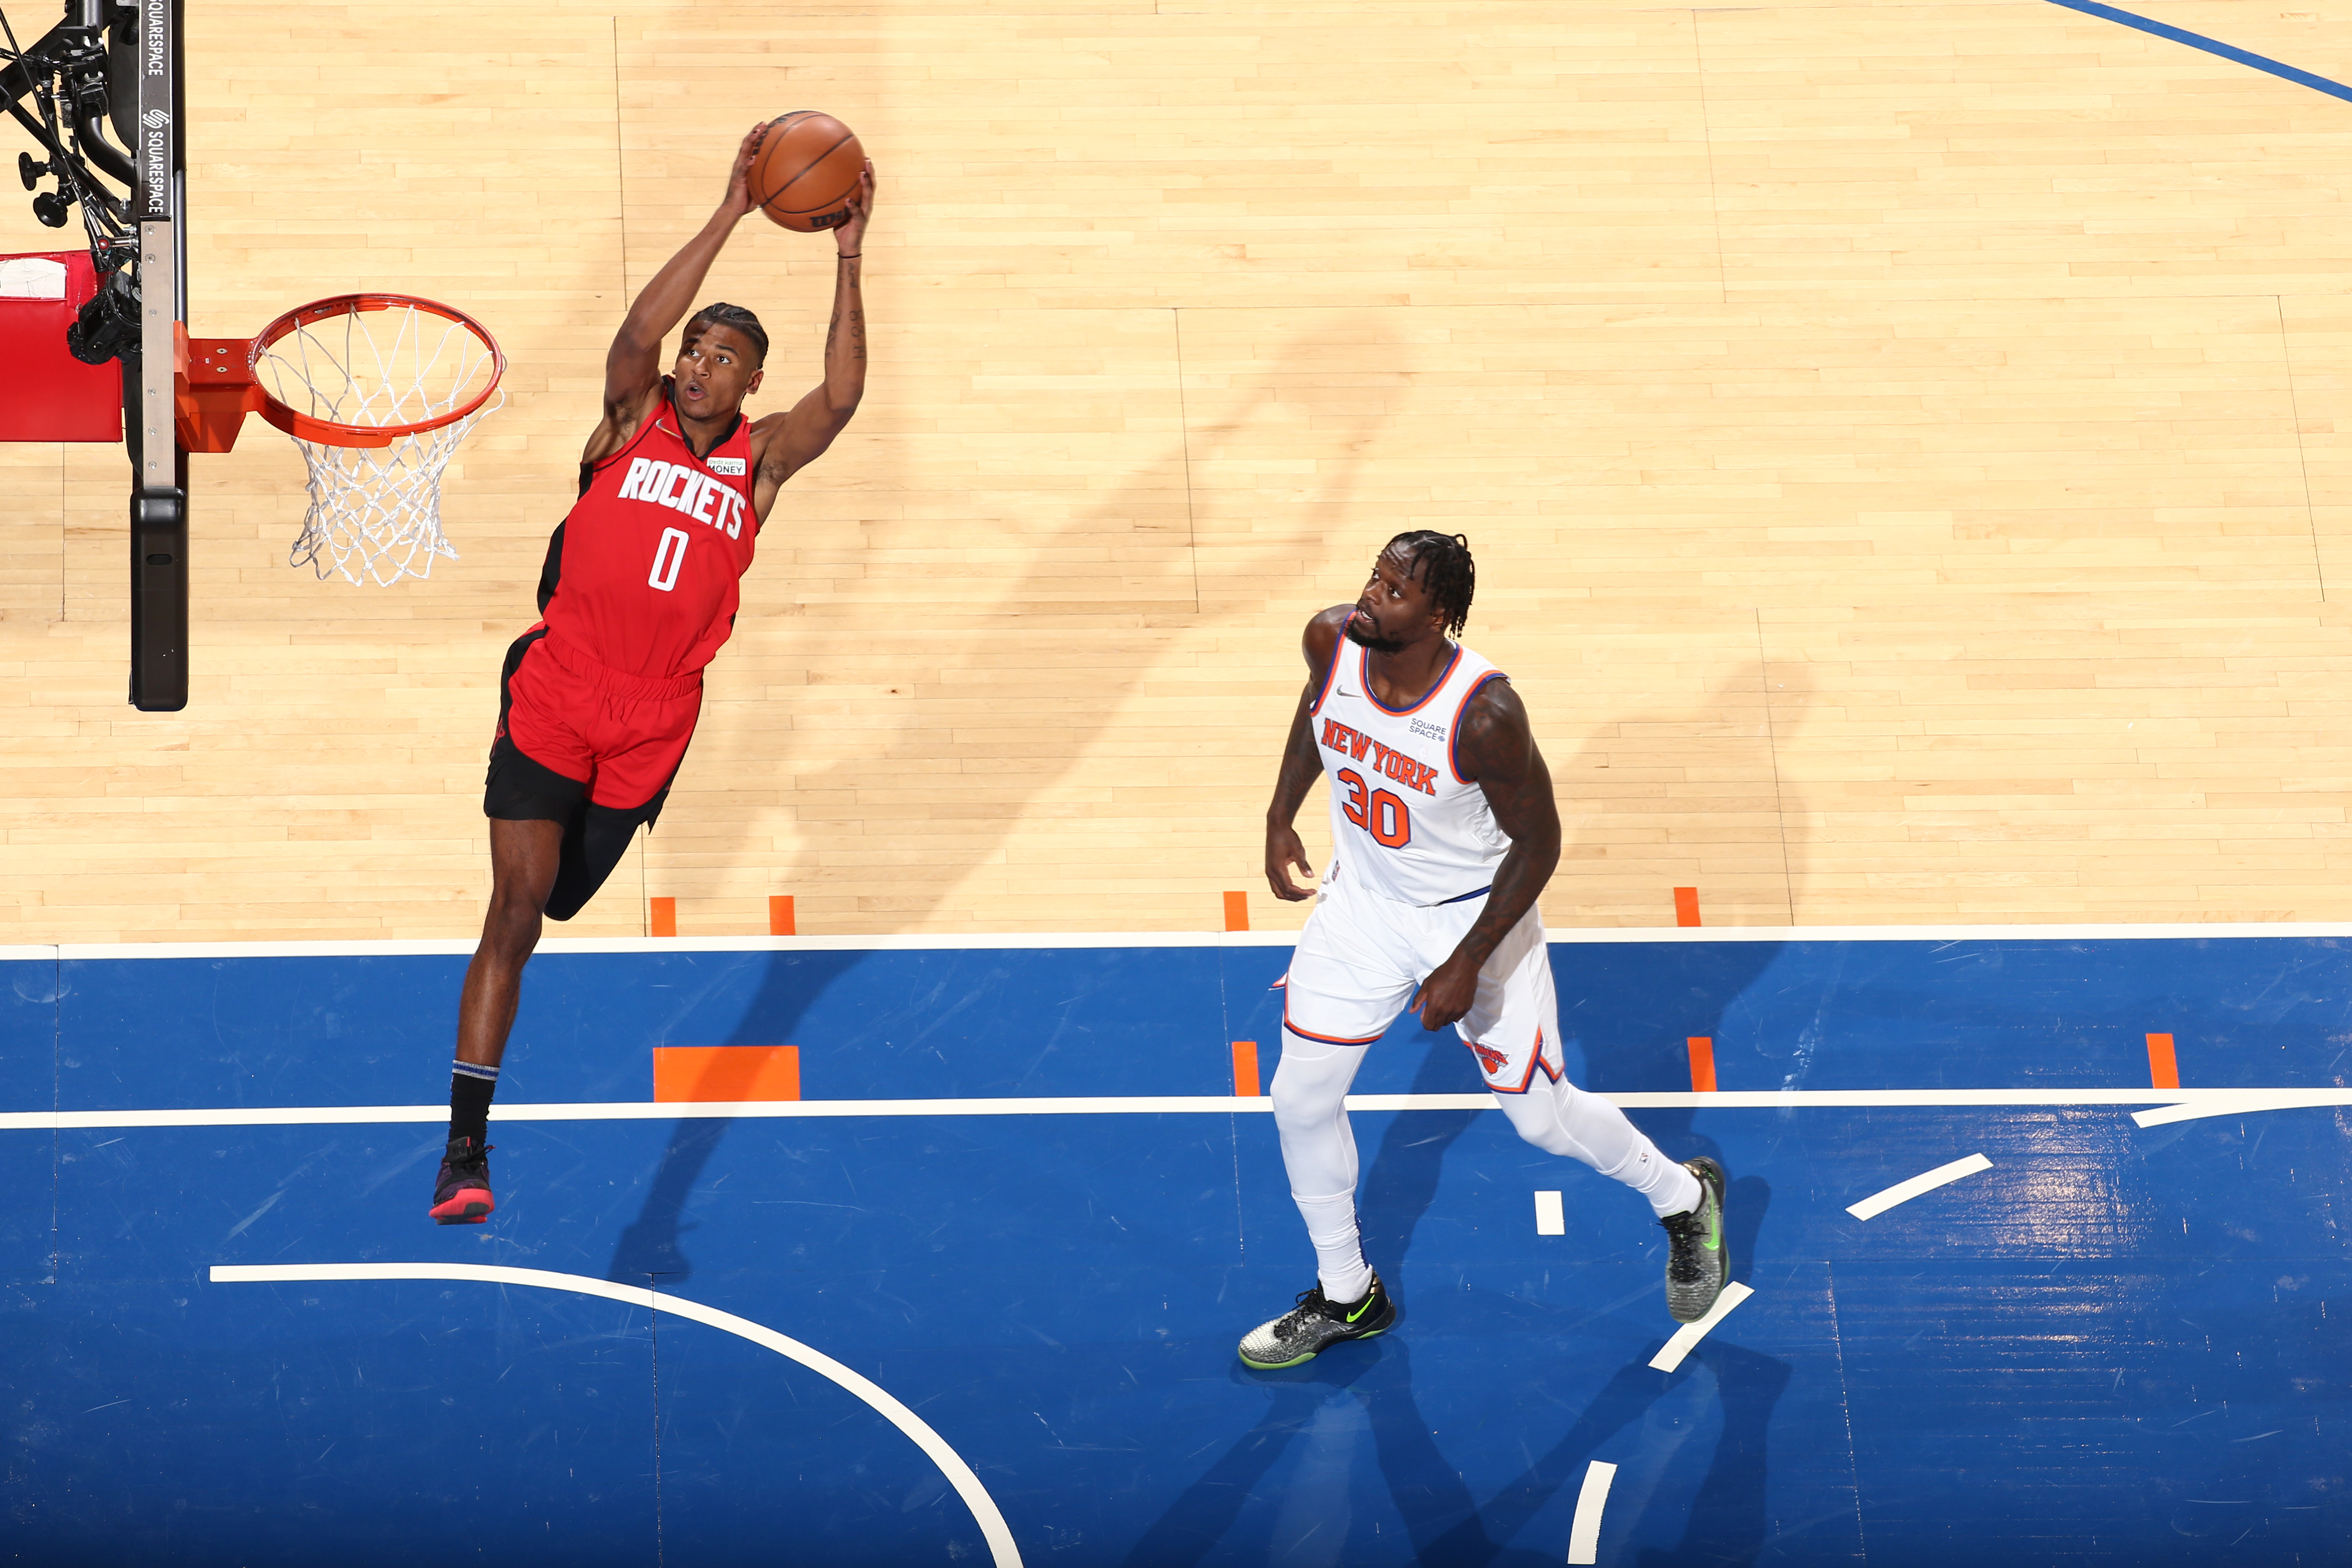 Houston Rockets v New York Knicks